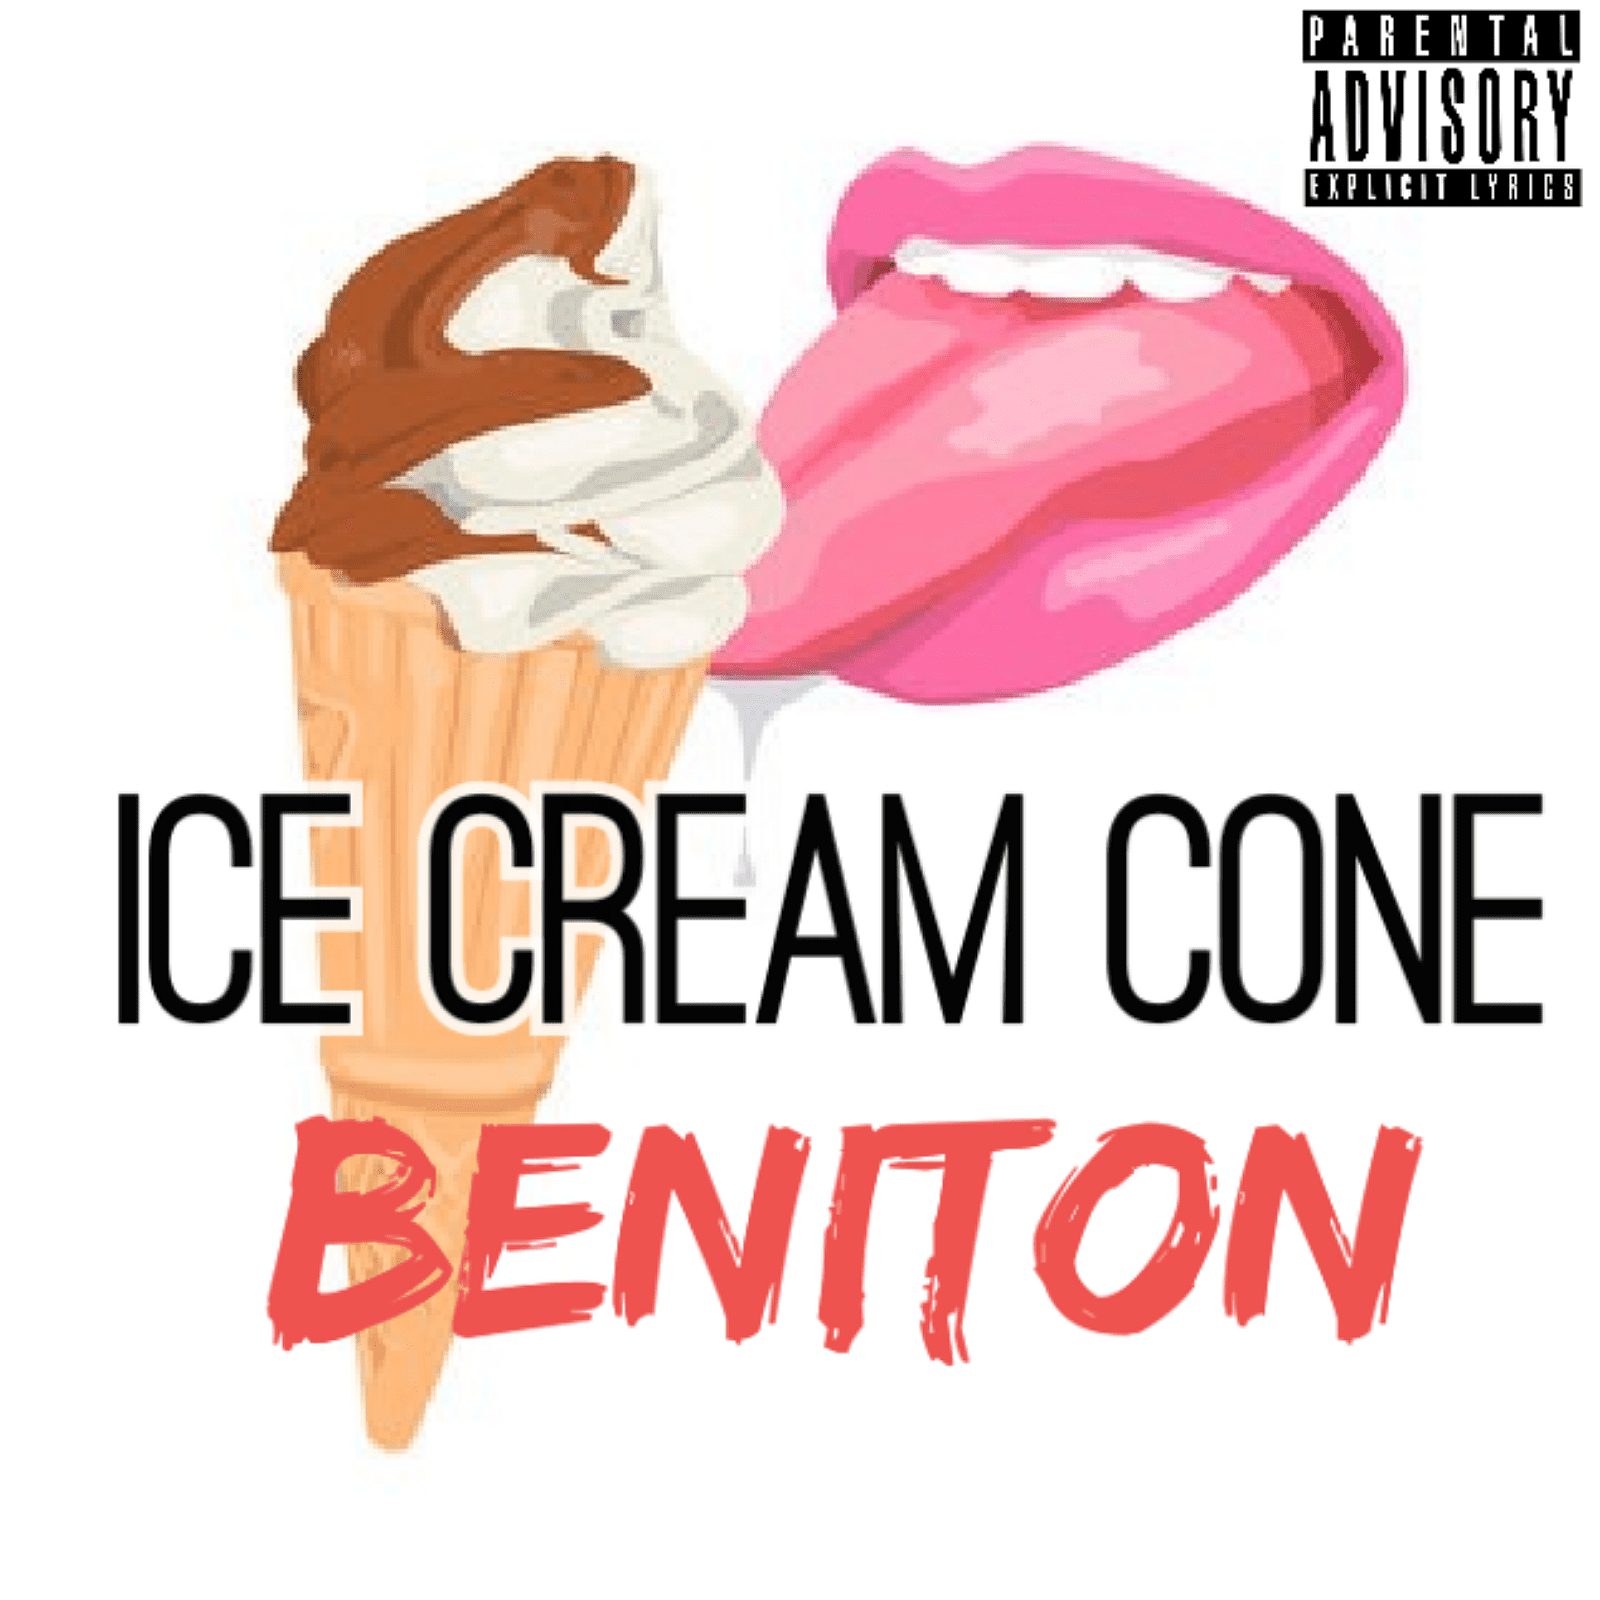 Beniton - Ice Cream Cone